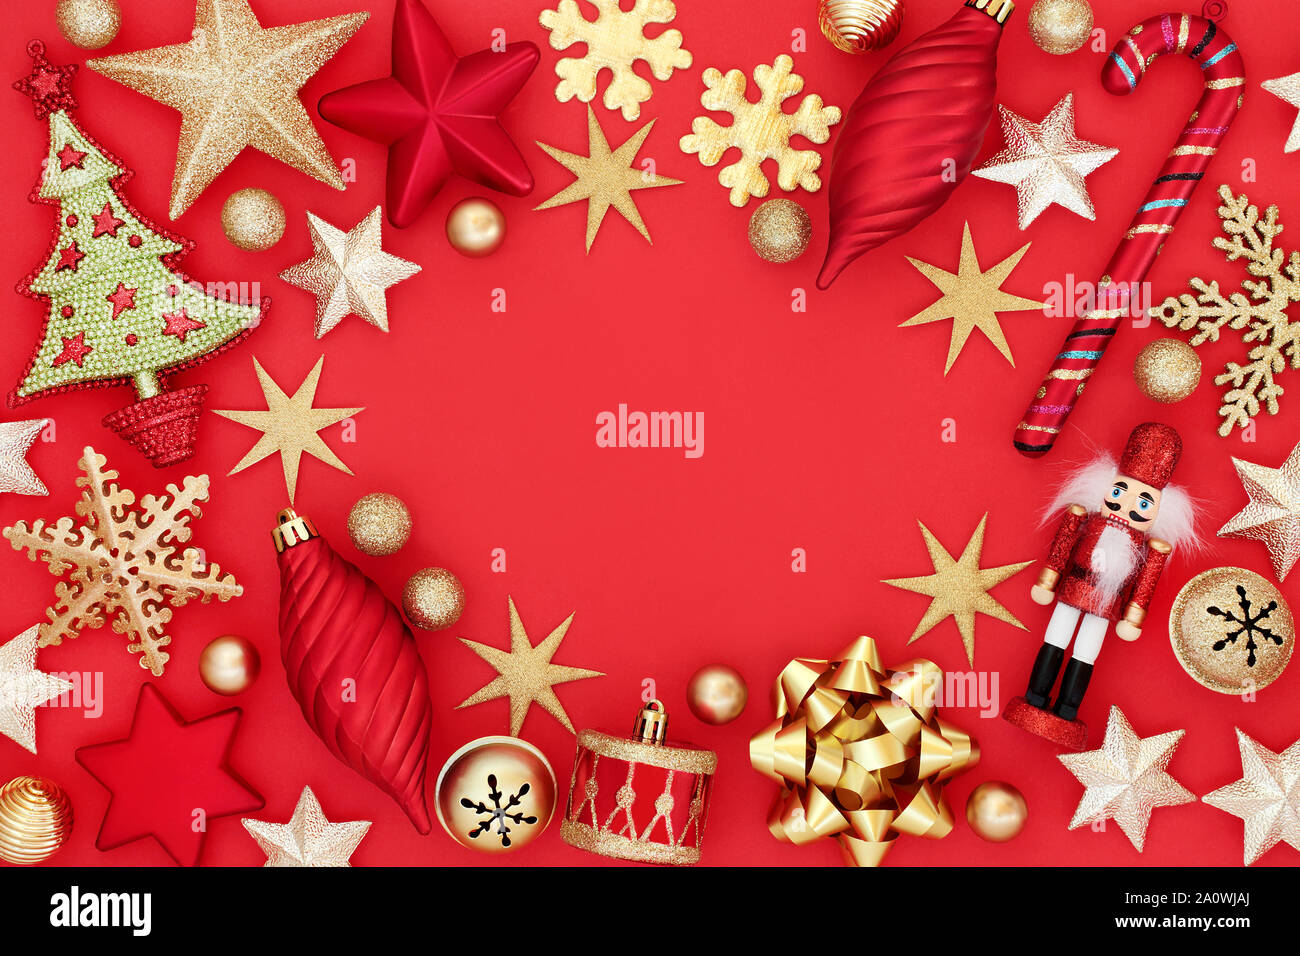 Boule de Noël décorations formant une frontière abstraite sur fond rouge avec l'exemplaire de l'espace. Carte de vœux traditionnels pour les fêtes. Banque D'Images